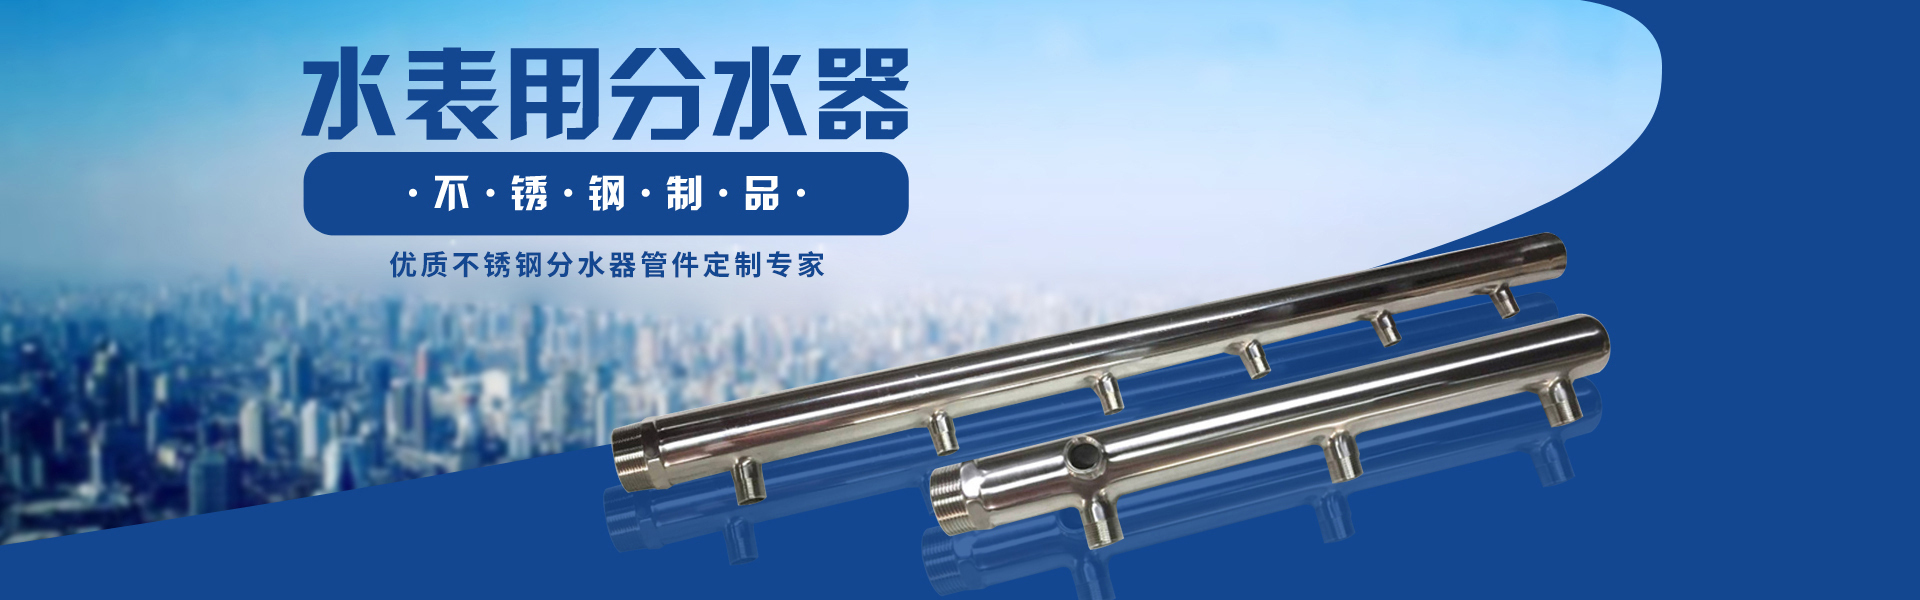 浙江11选5公司專業生産不鏽鋼分水器，是一家優質無菌不鏽鋼薄壁衛生琯件、閥門生産廠家。